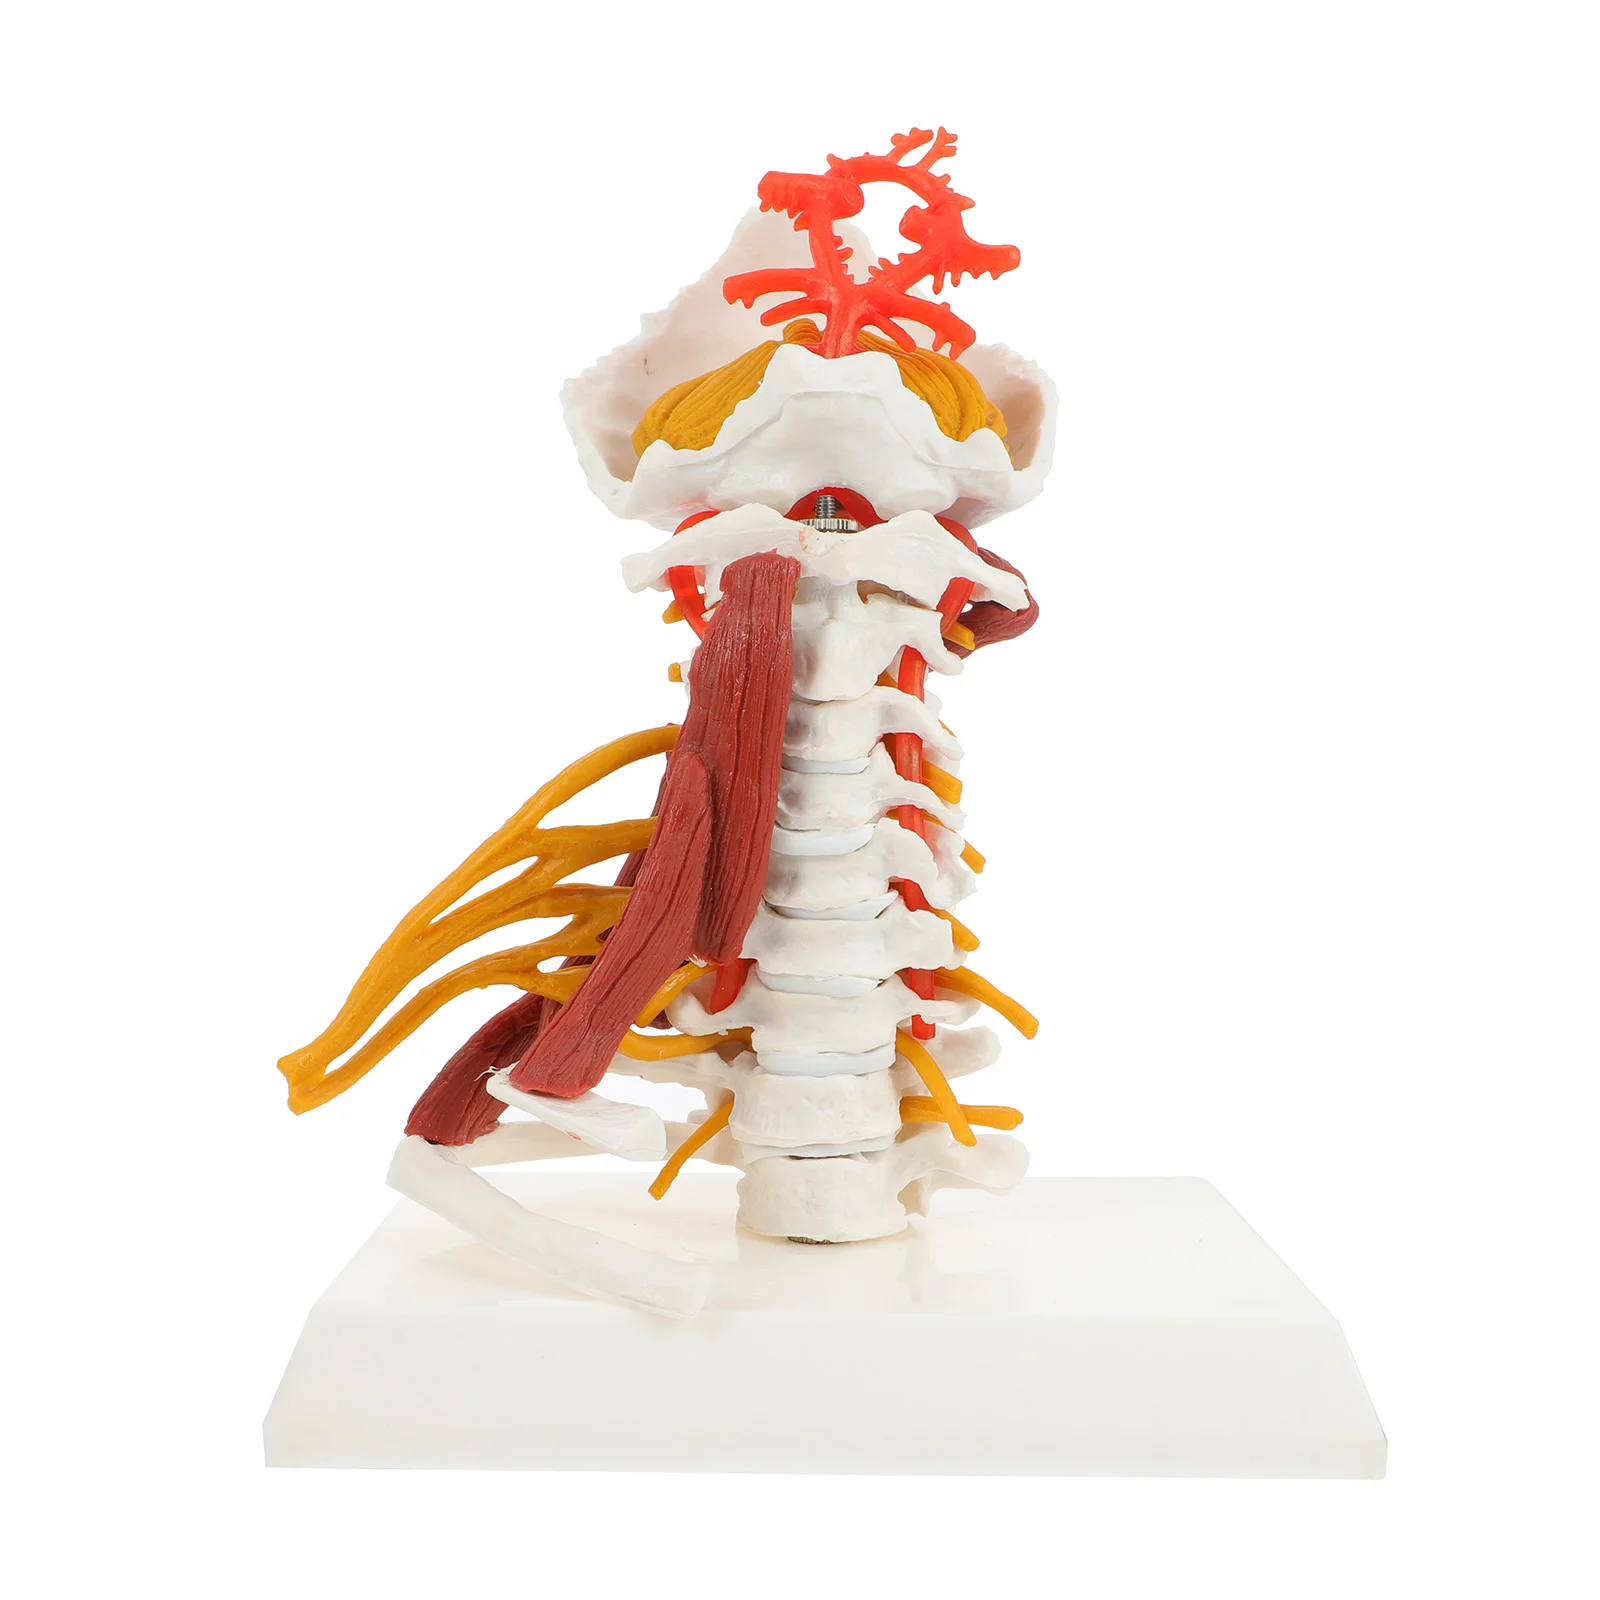 

Медицинская модель метода методического скелета, биология шейного позвонка, человеческого позвоночника, нервных мышц, анатомическая из ПВХ